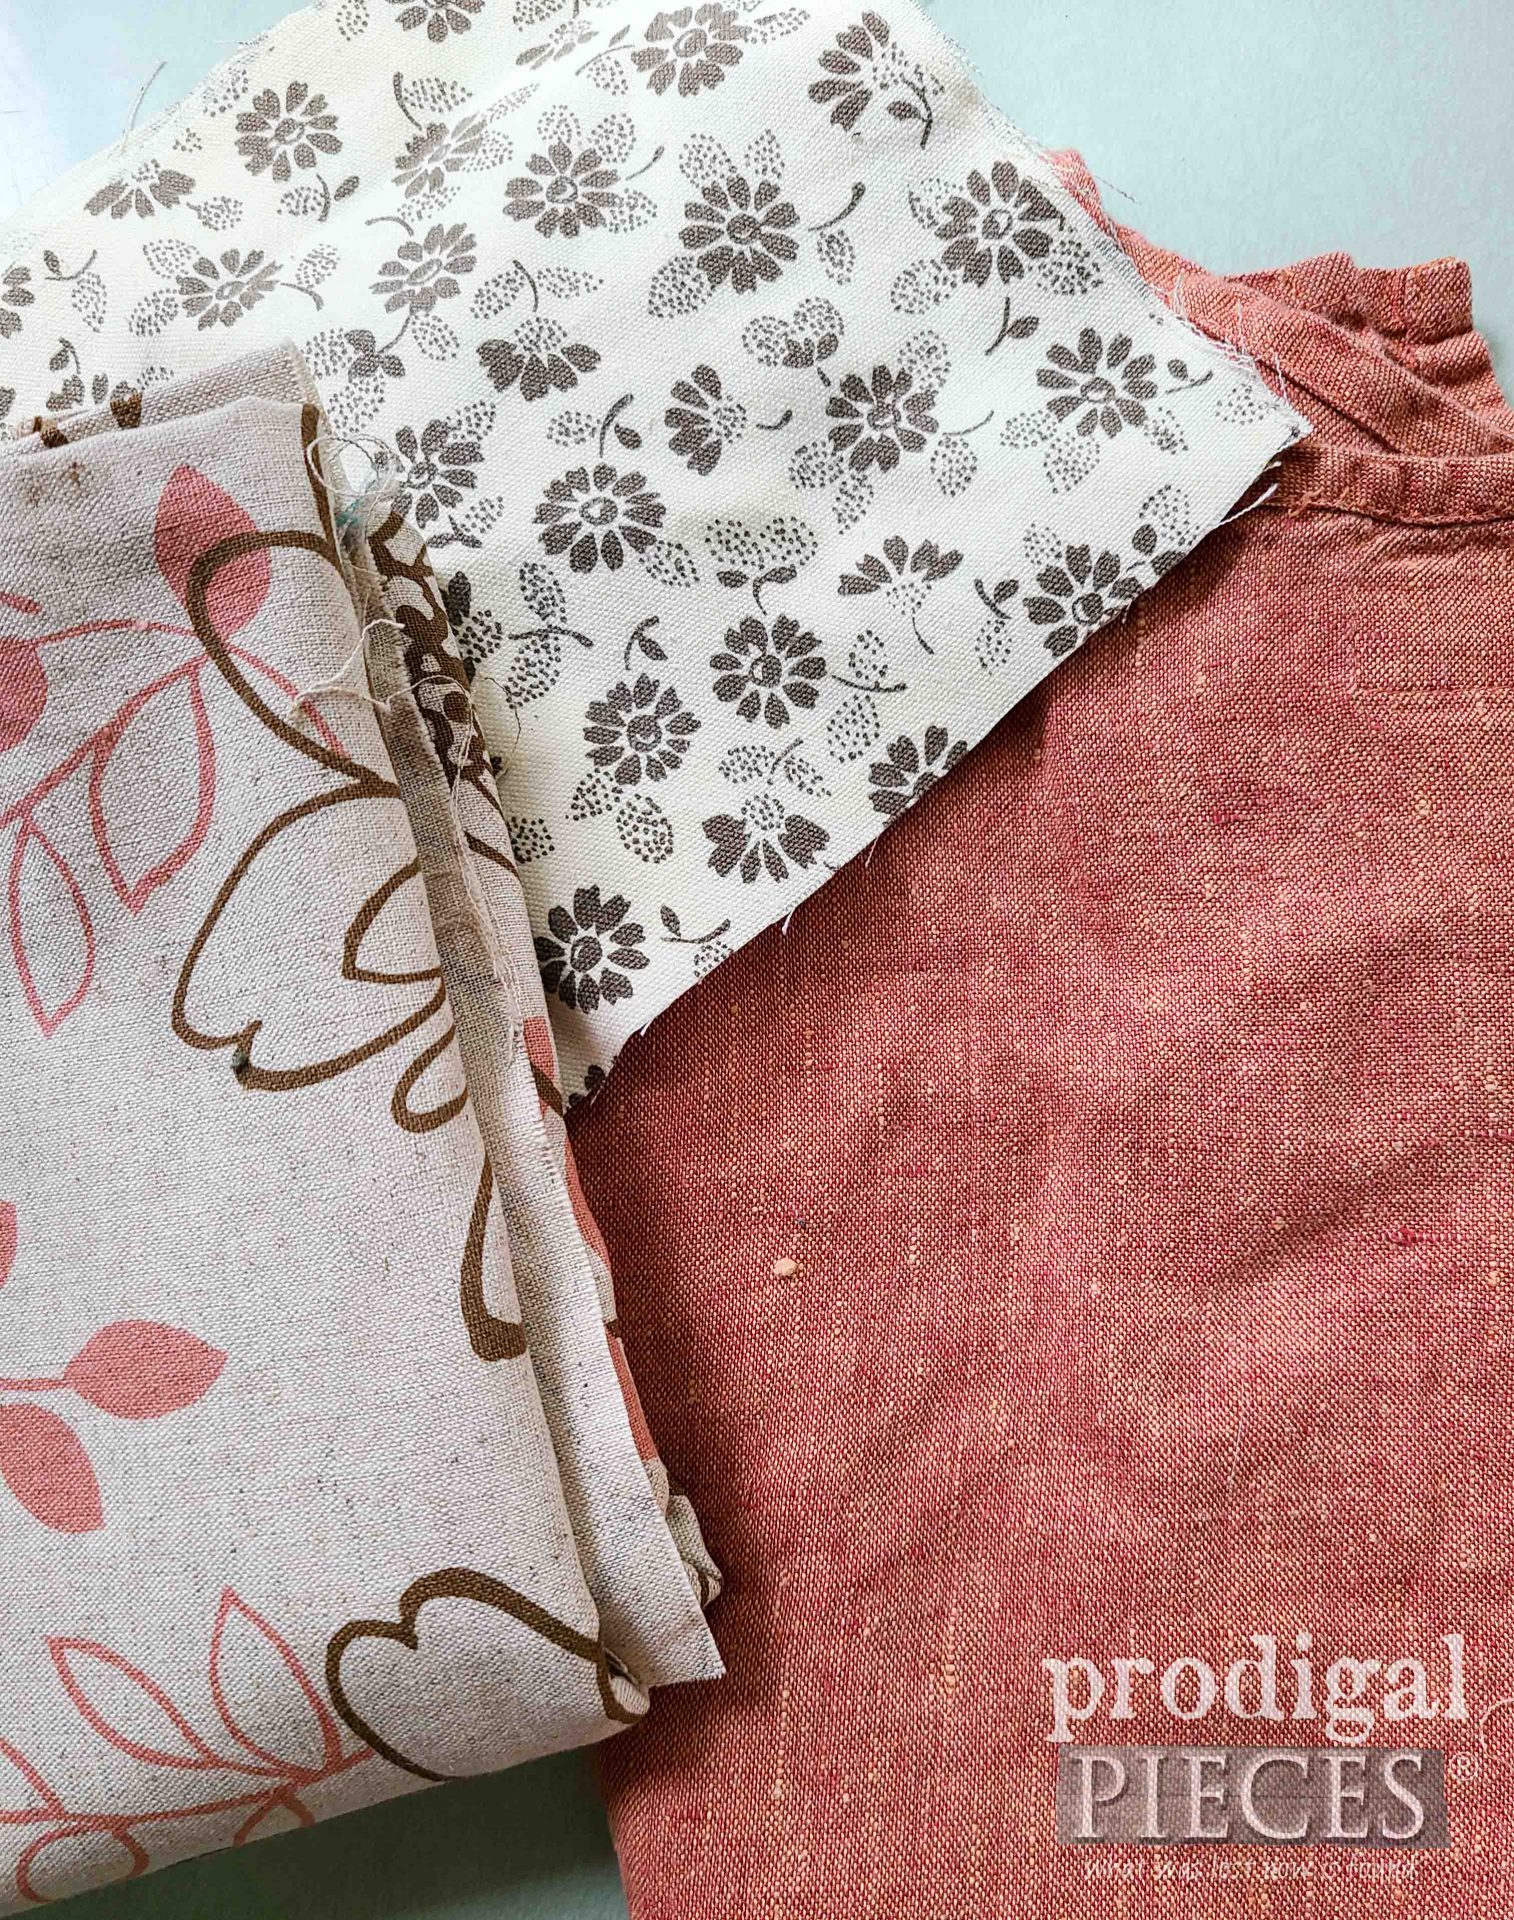 DIY Sling Purse Fabric Choices | prodigalpieces.com #prodigalpieces